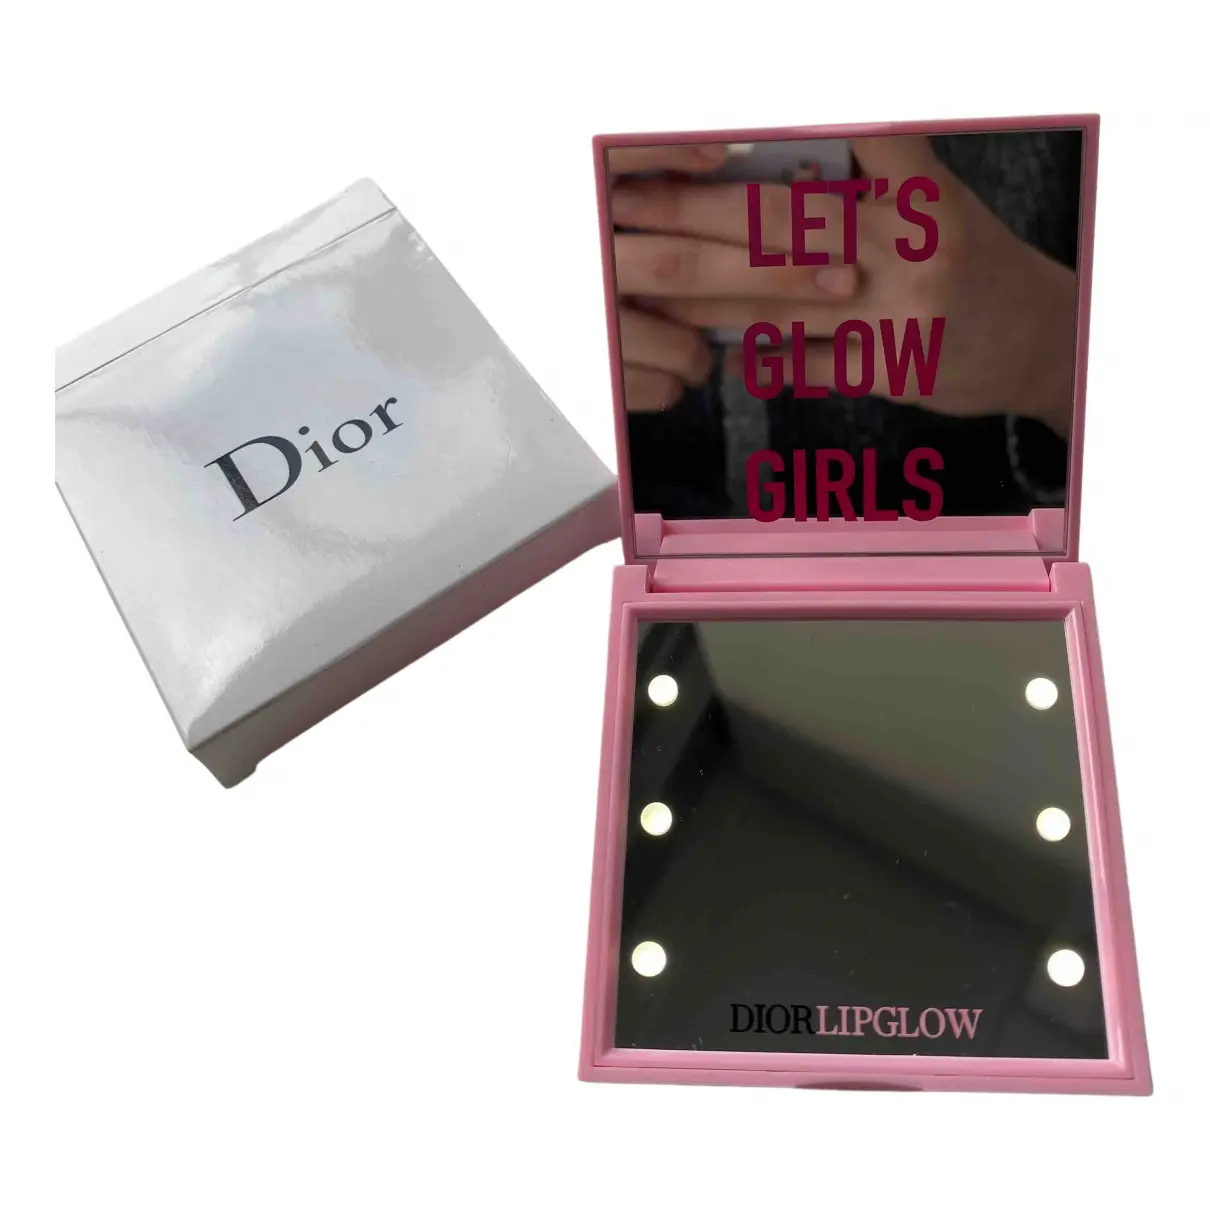 Buy Dior Mirror online